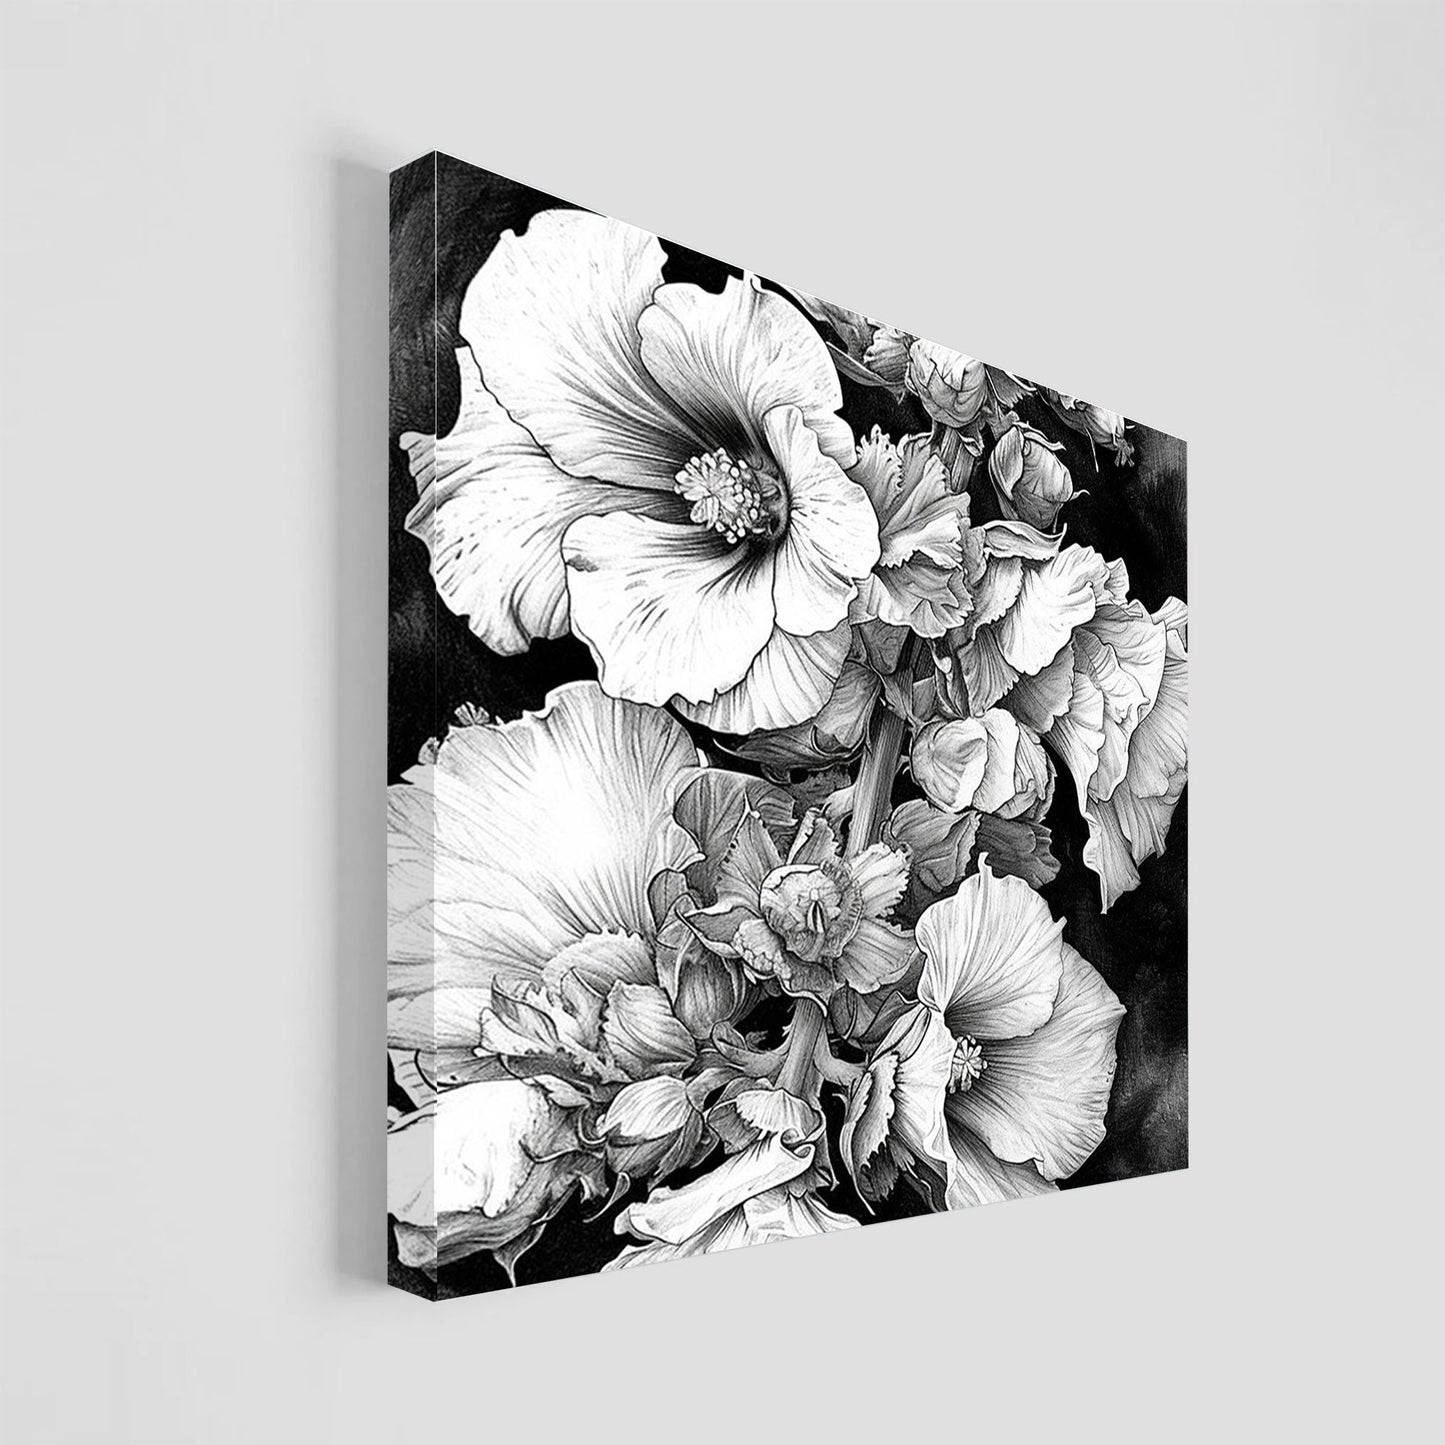 Ilustración en blanco y negro de un ramillete de flores detalladamente dibujadas.